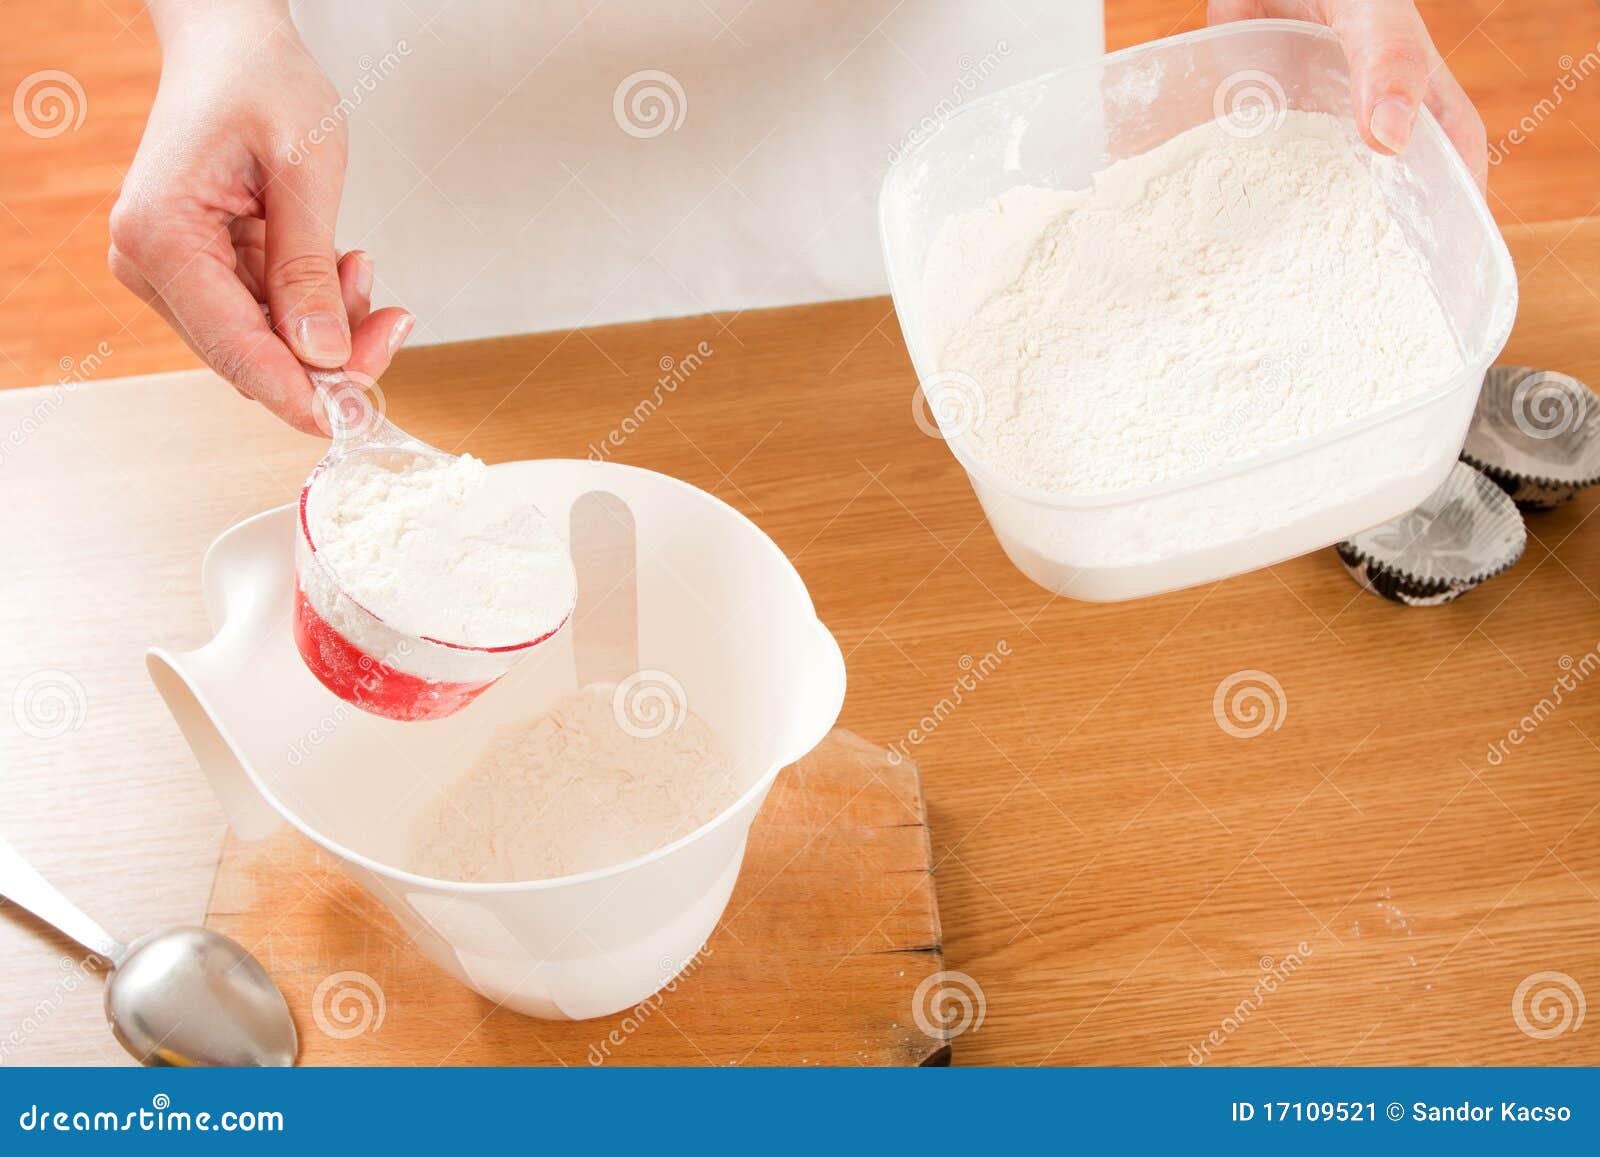 dosing flour